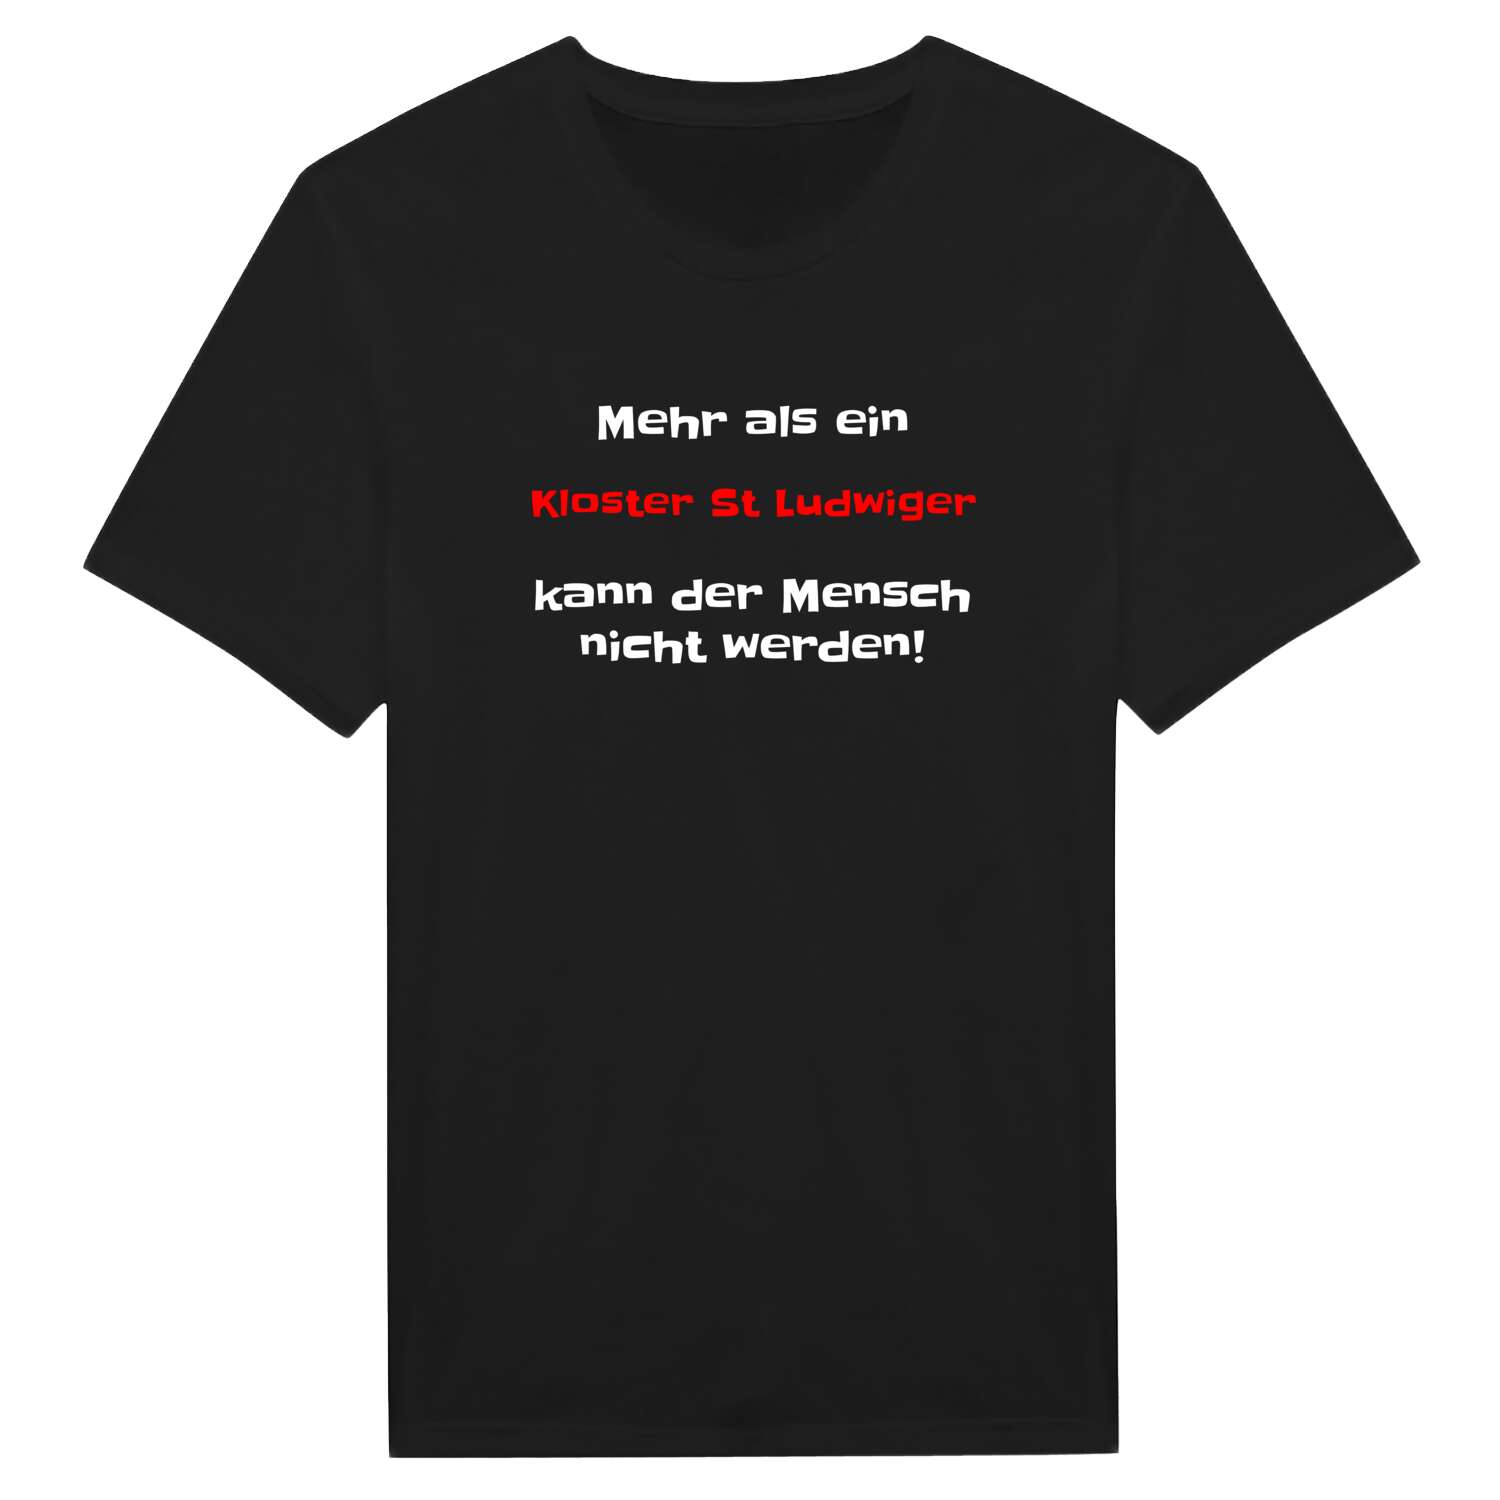 Kloster St Ludwig T-Shirt »Mehr als ein«